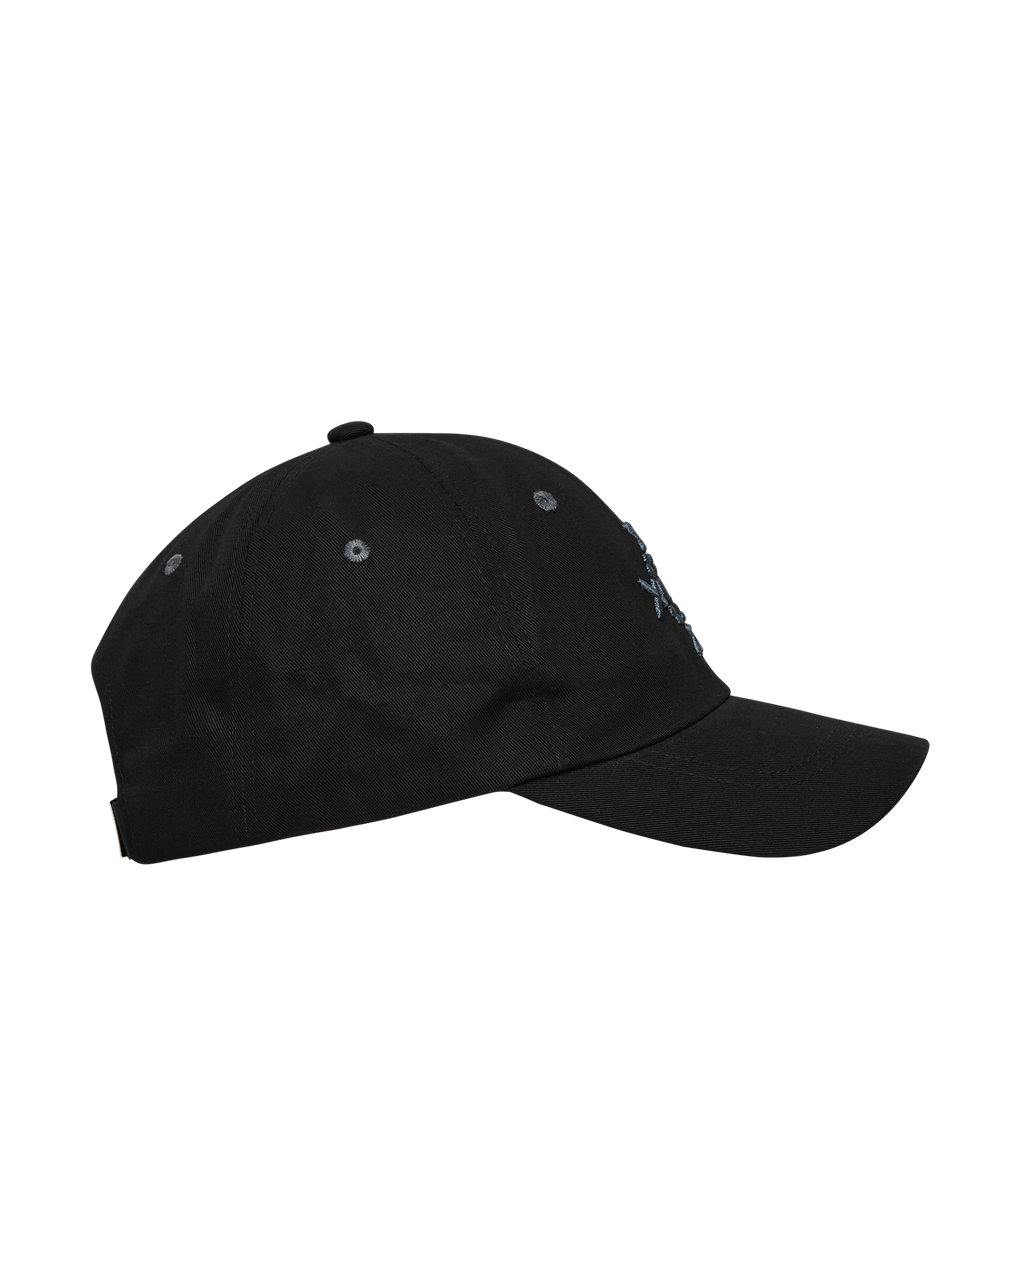 _J.L-A.L_ × Sound Sports CAP キャップ ブラック帽子